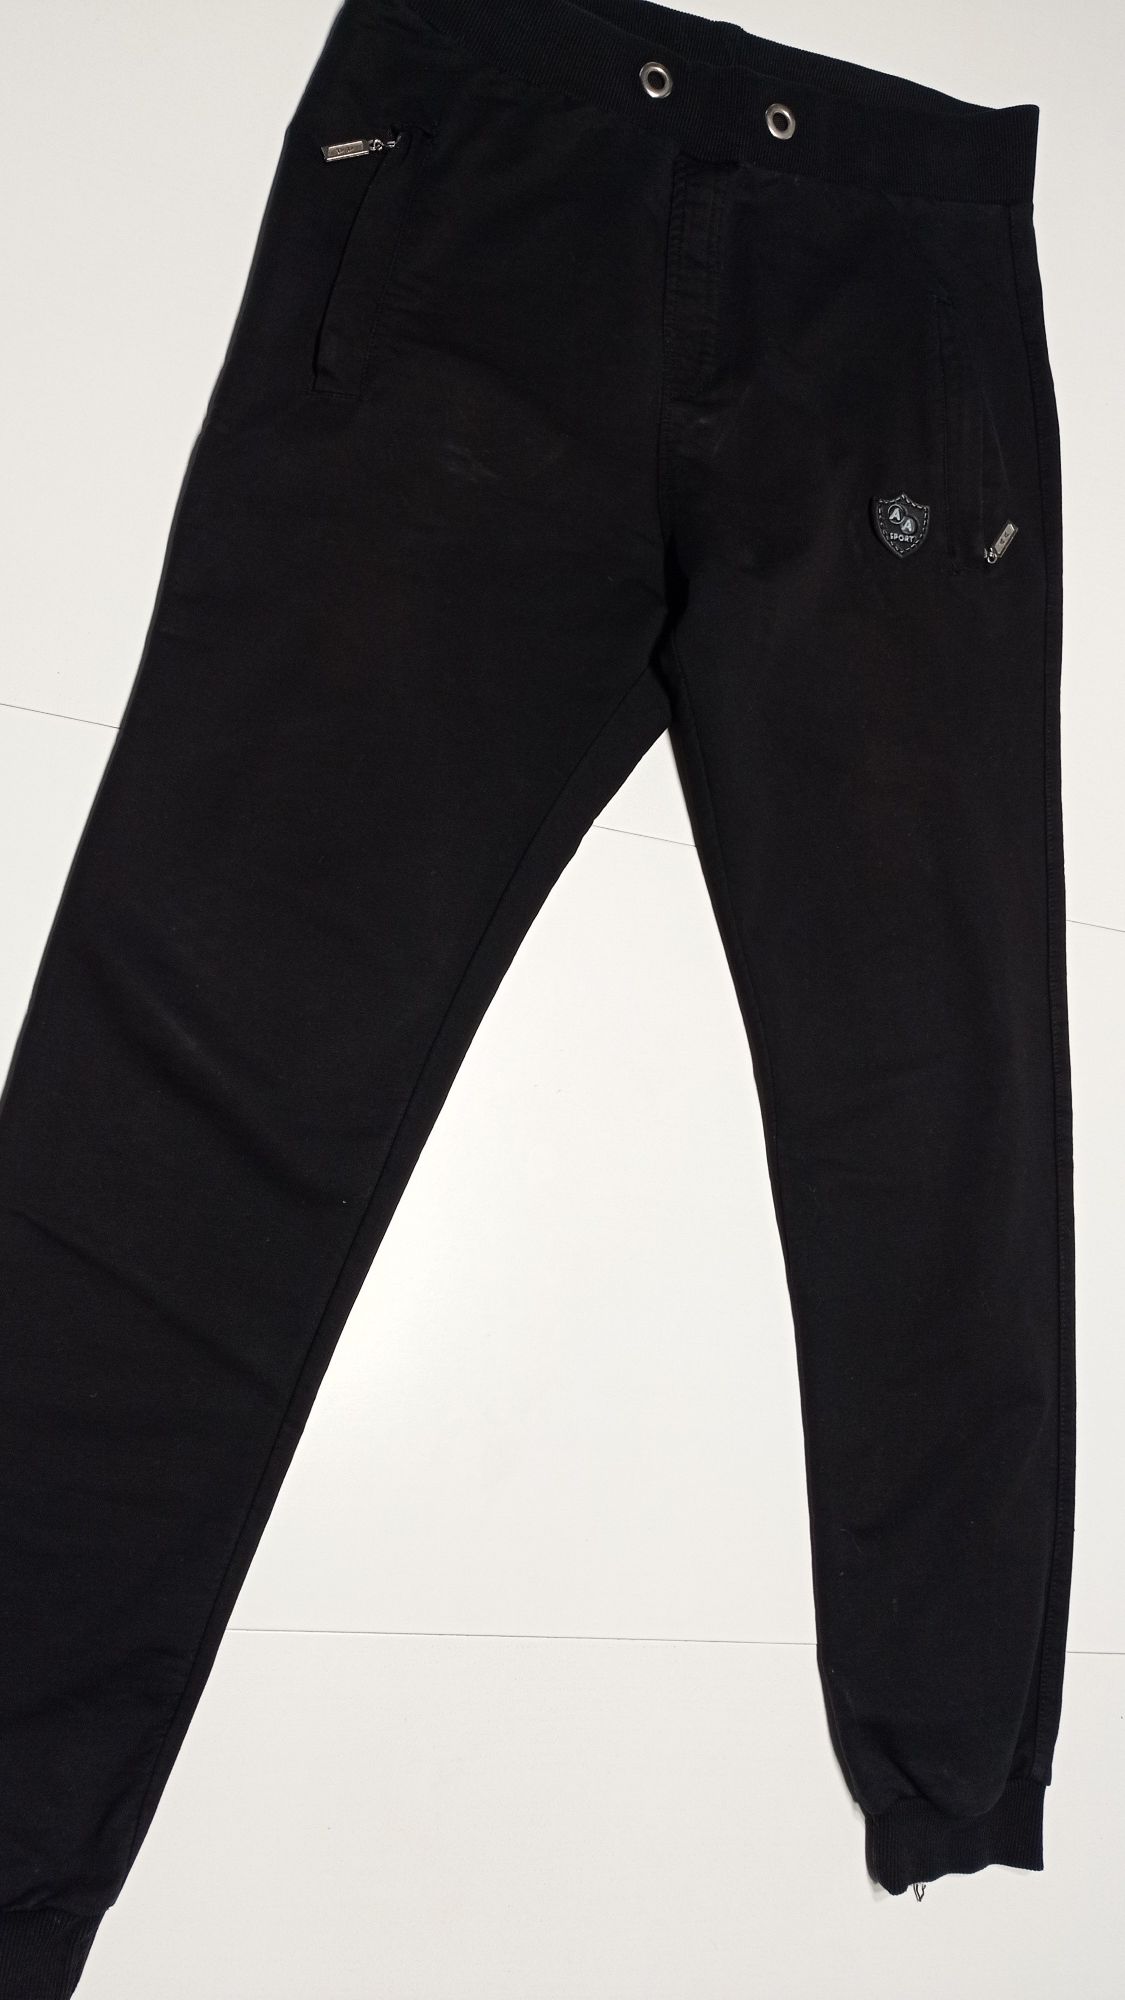 Spodnie jeansy dresy chłopięce 170, 4 pary, cena 30 zł / szt